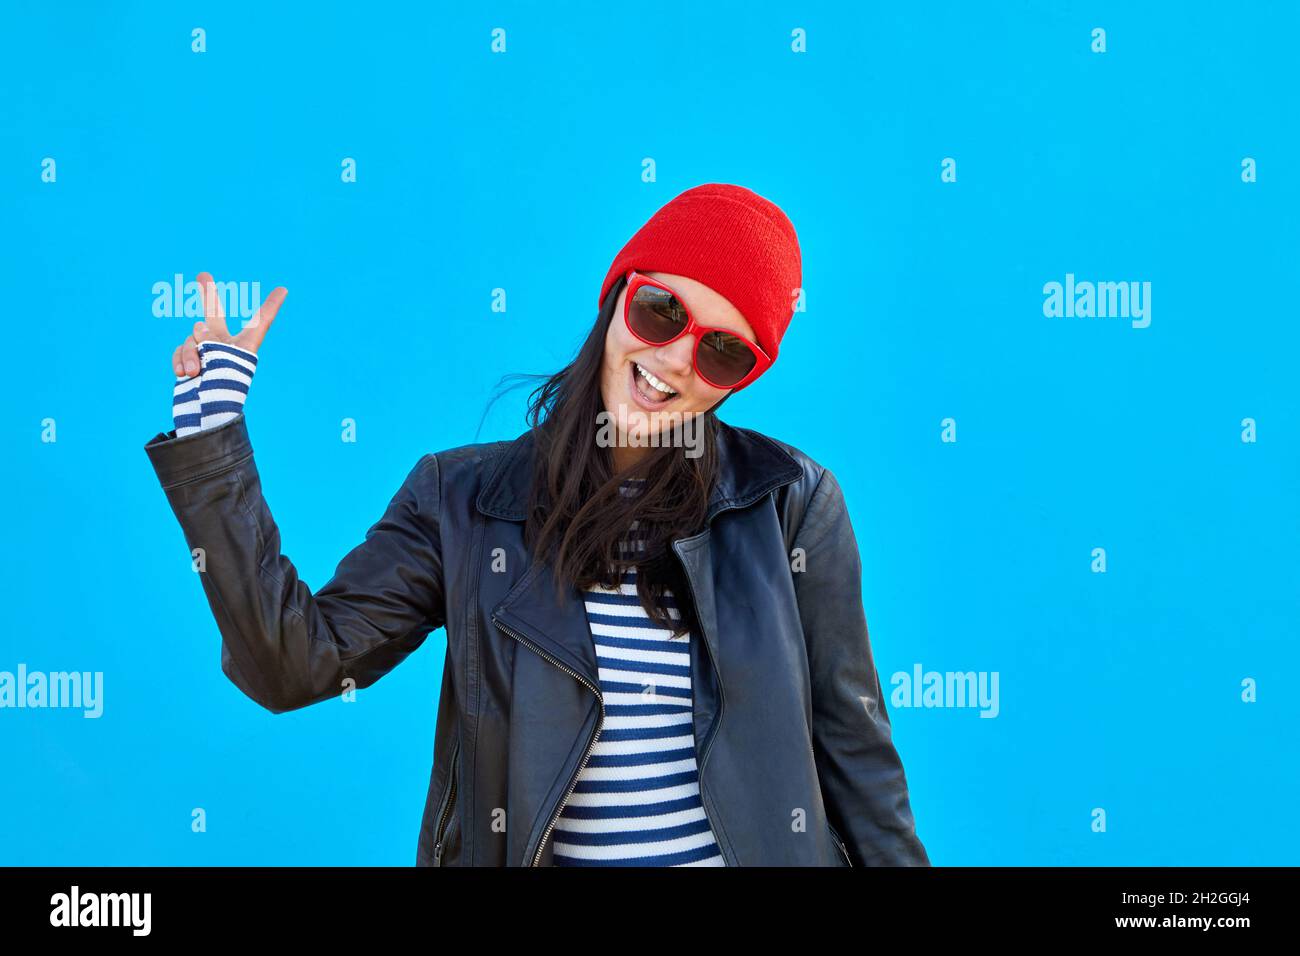 Entzückende trendige Frau in Sonnenbrille und Lederjacke zeigt zwei Finger Geste auf lebhaftem blauen Hintergrund Stockfoto